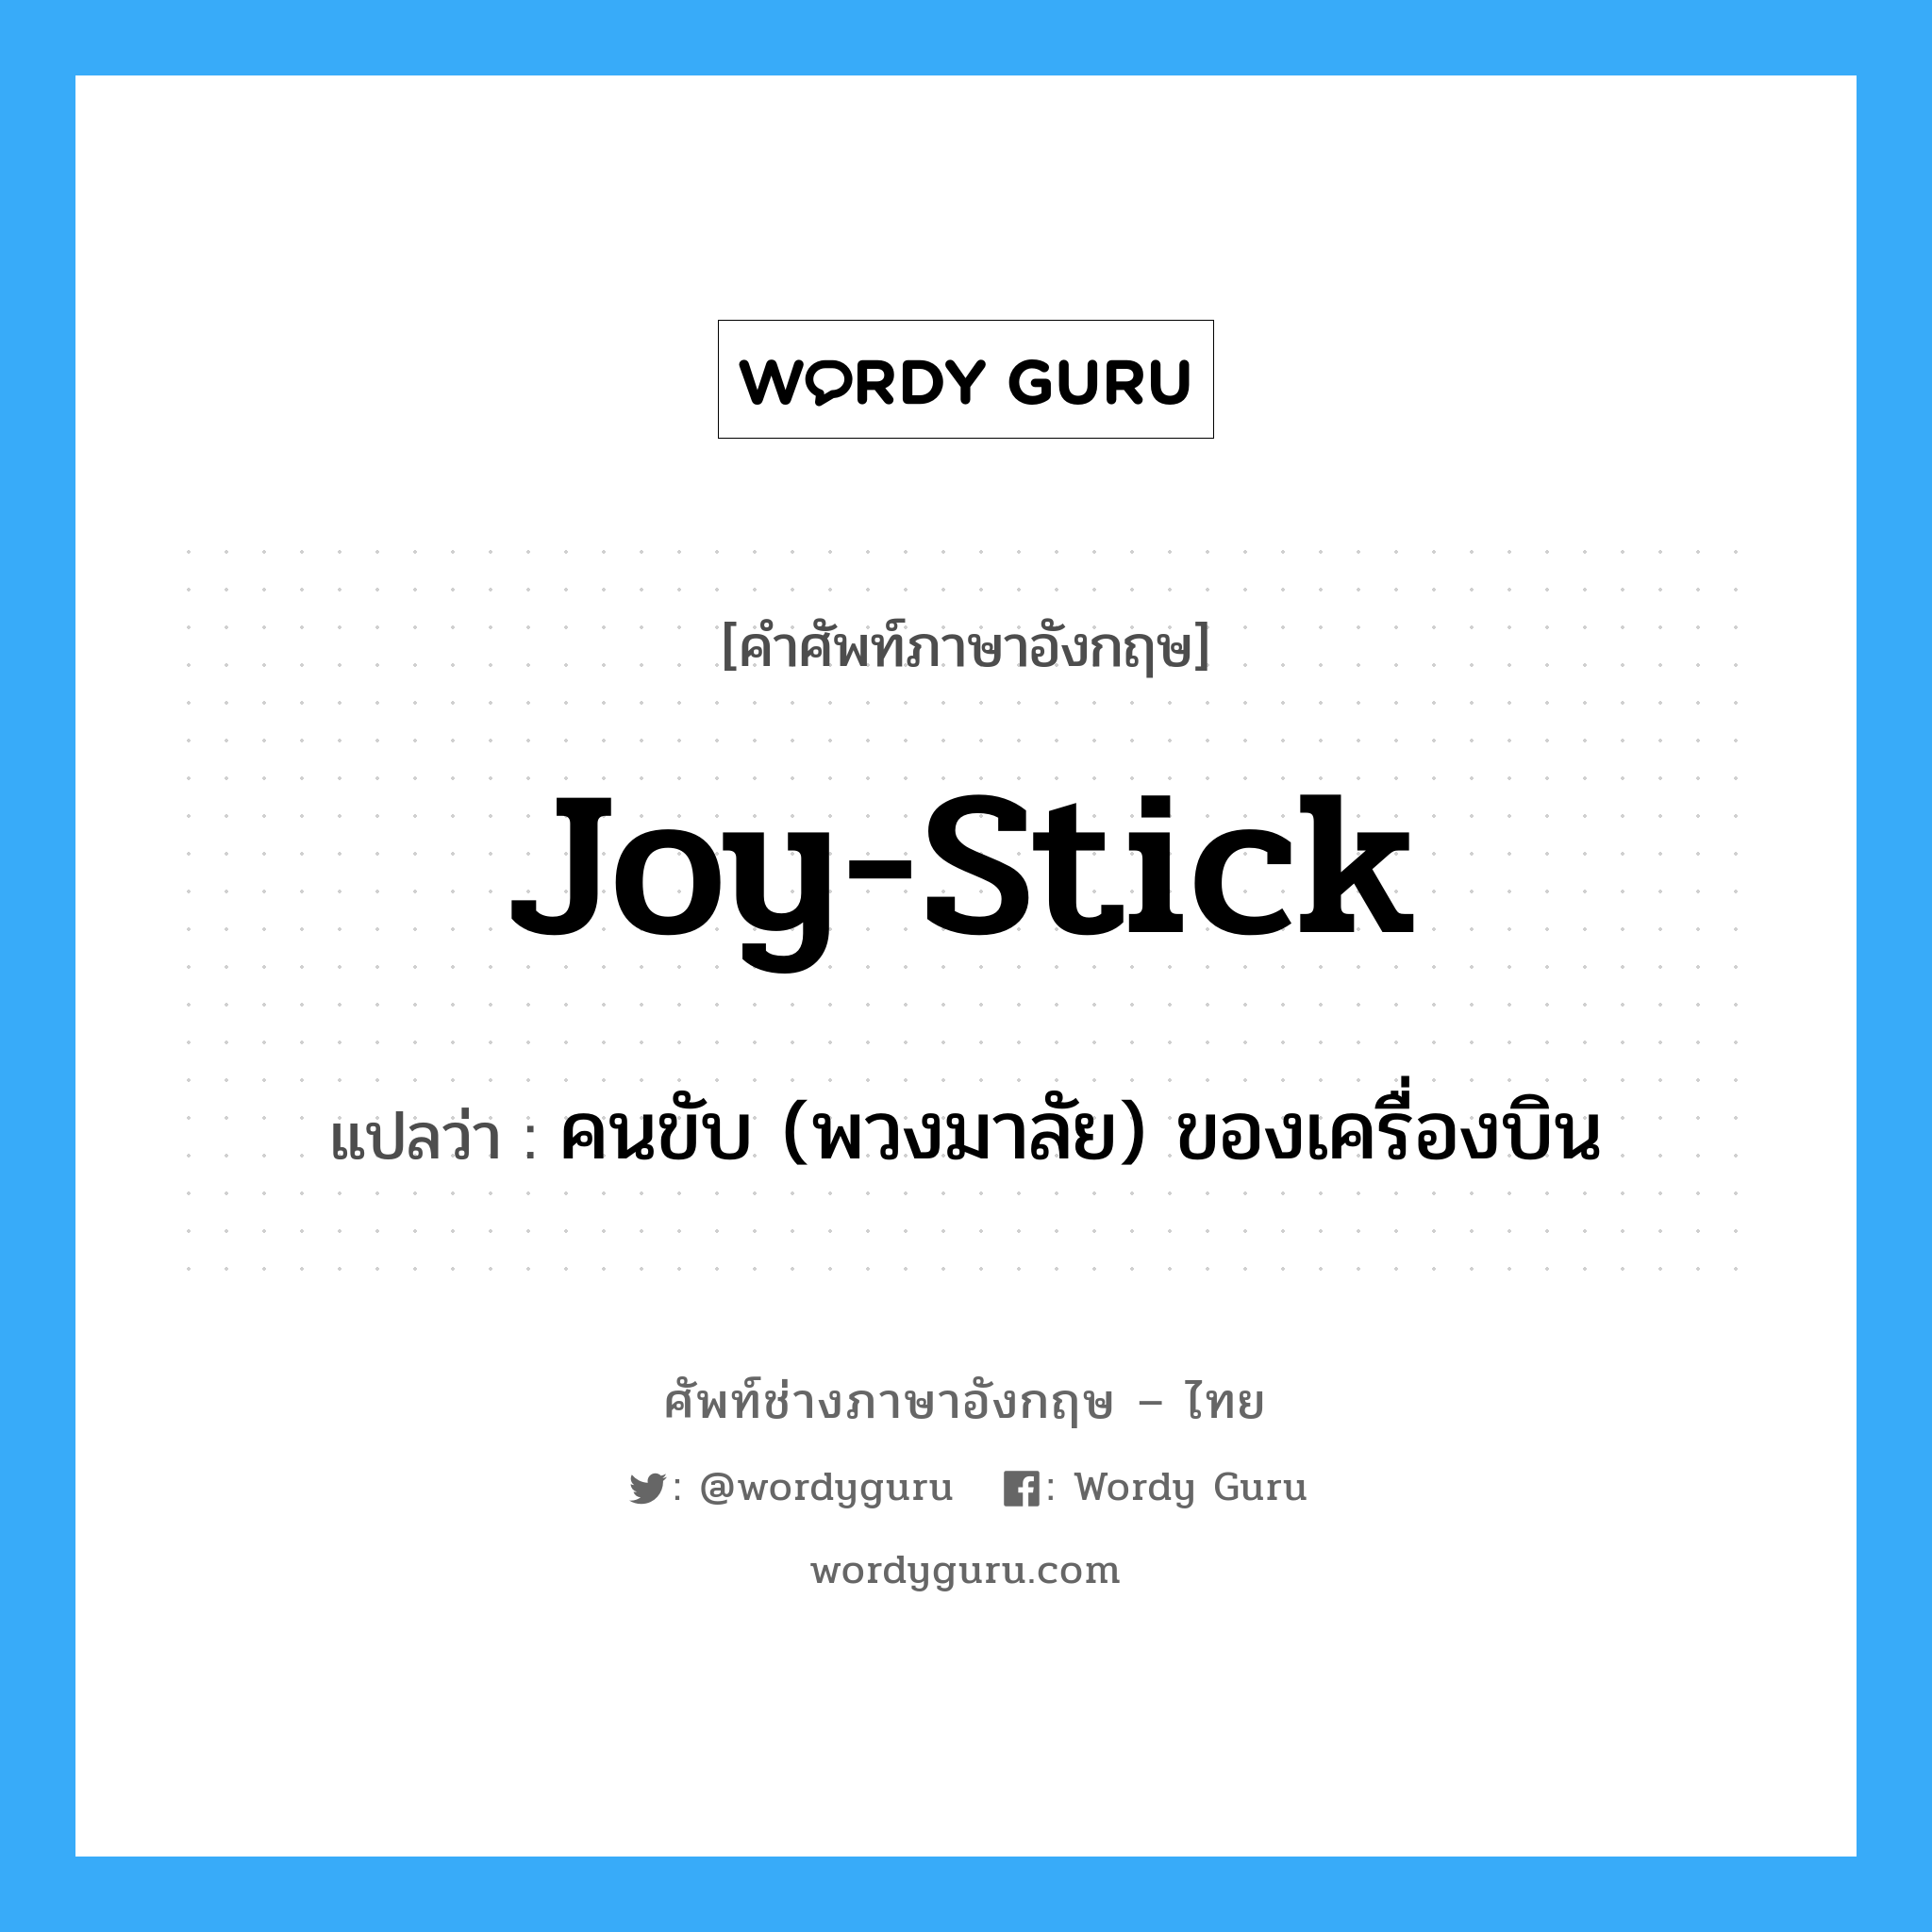 joy-stick แปลว่า?, คำศัพท์ช่างภาษาอังกฤษ - ไทย joy-stick คำศัพท์ภาษาอังกฤษ joy-stick แปลว่า คนขับ (พวงมาลัย) ของเครื่องบิน